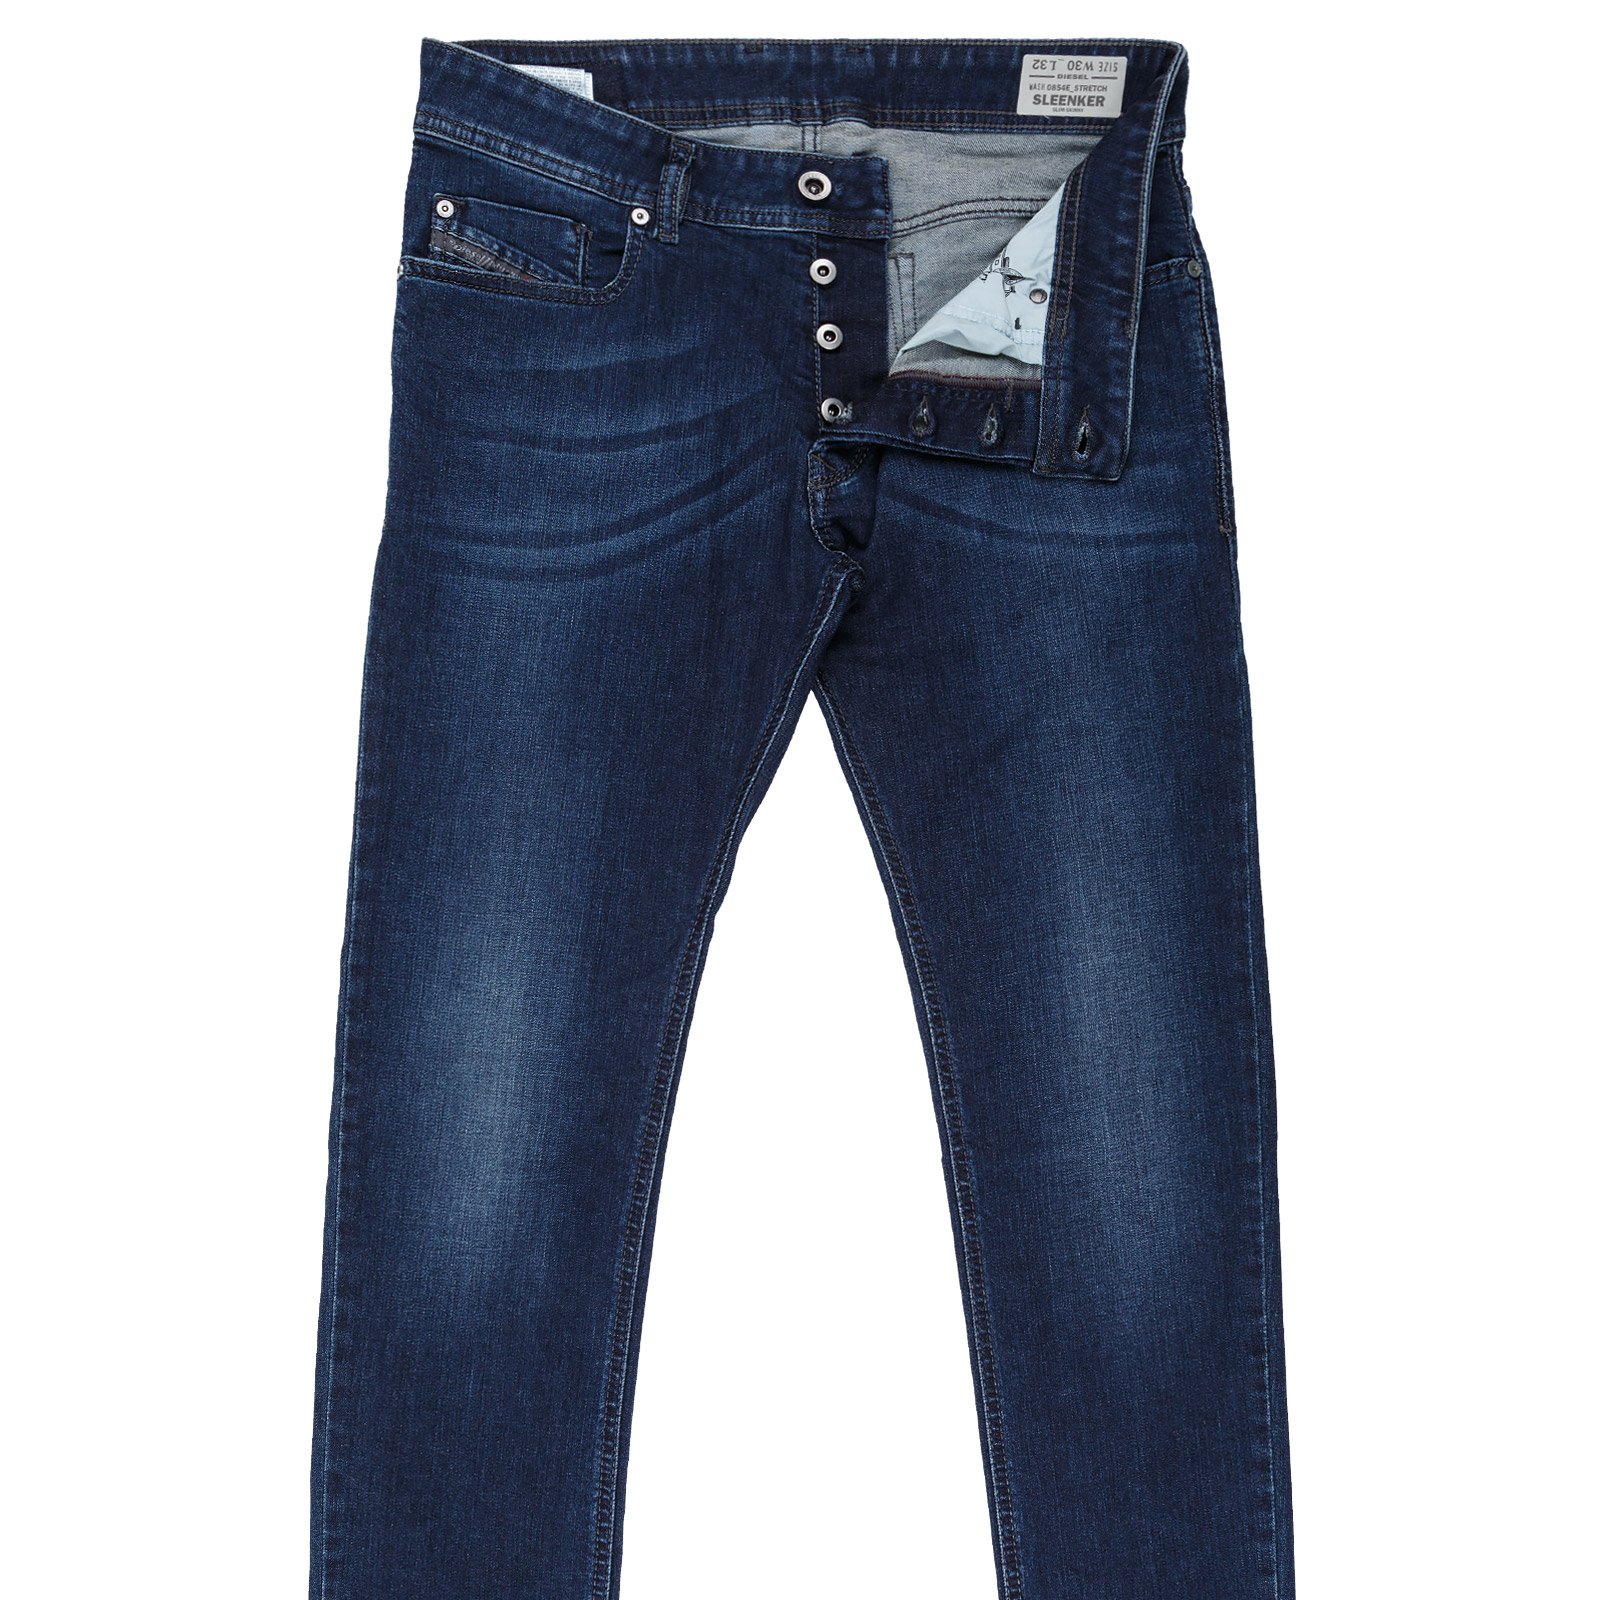 Huiswerk maken fee menigte Sleenker Skinny Fit Stretch Denim Jeans - On Sale : Fifth Avenue Menswear -  DIESEL 2016SS-C5